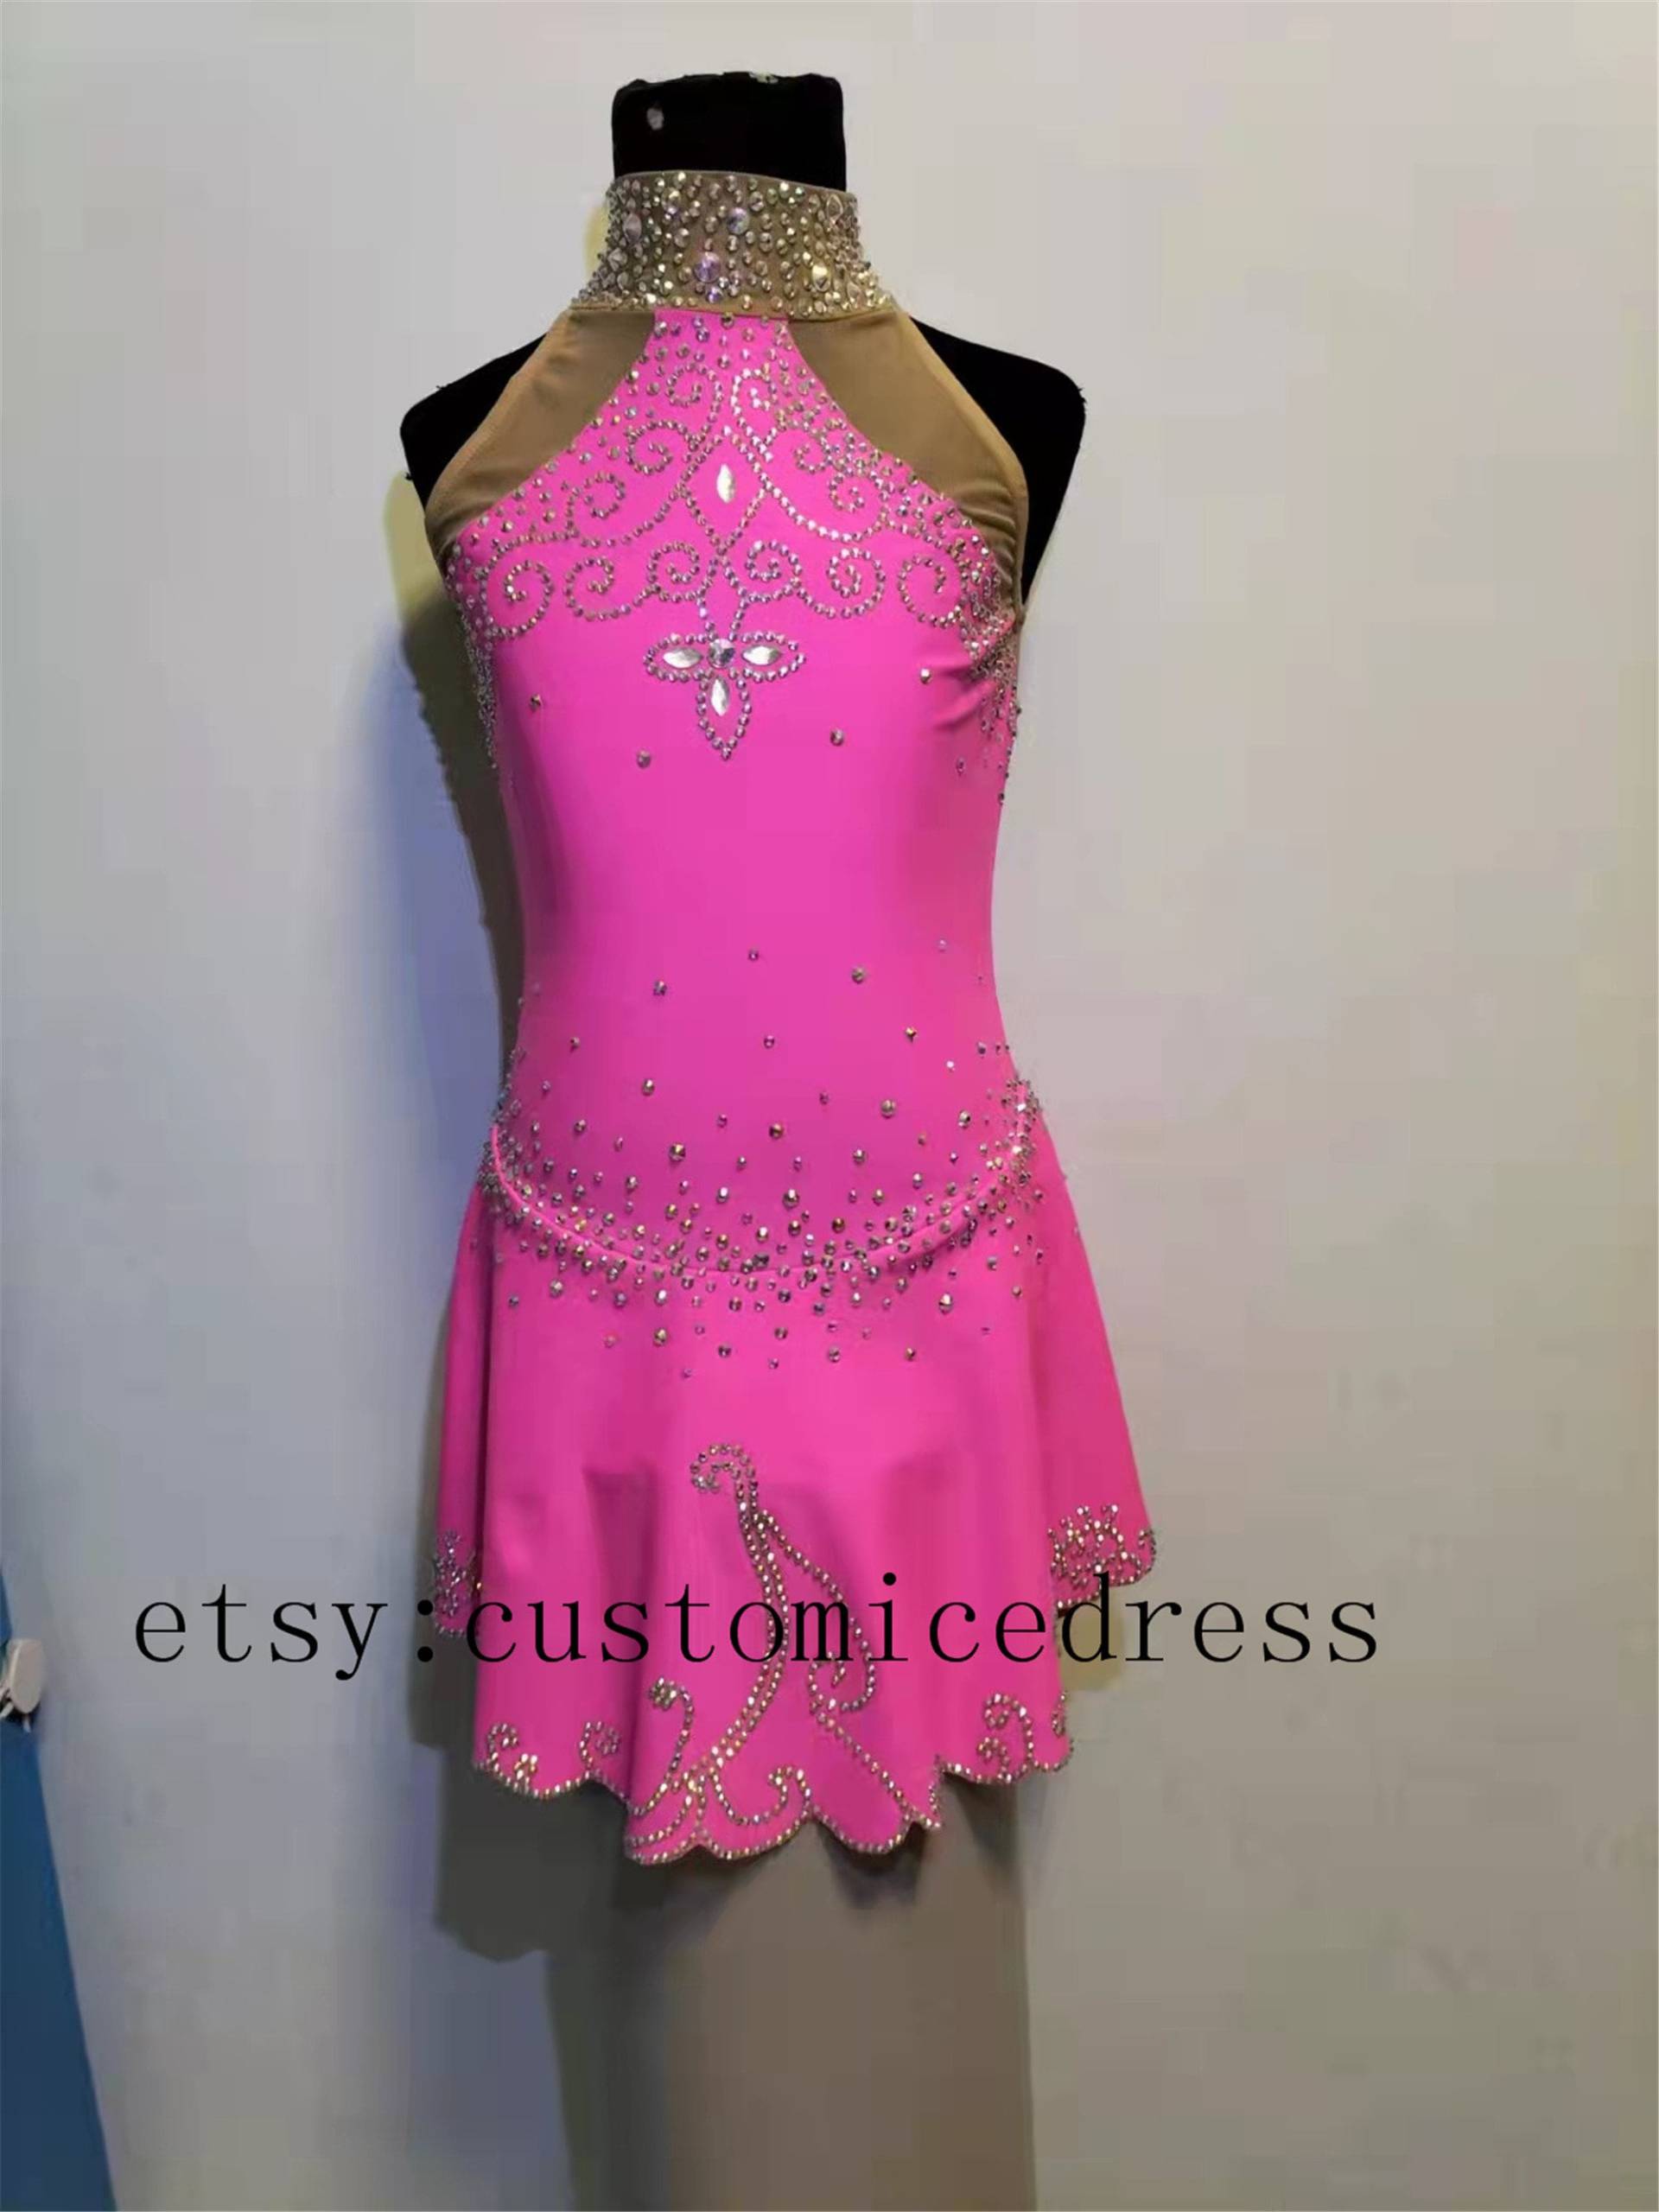 Pinkes Eislaufkleid Für Mädchen Wettbewerb Eiskunstlaufkleid Perlen von customicedress